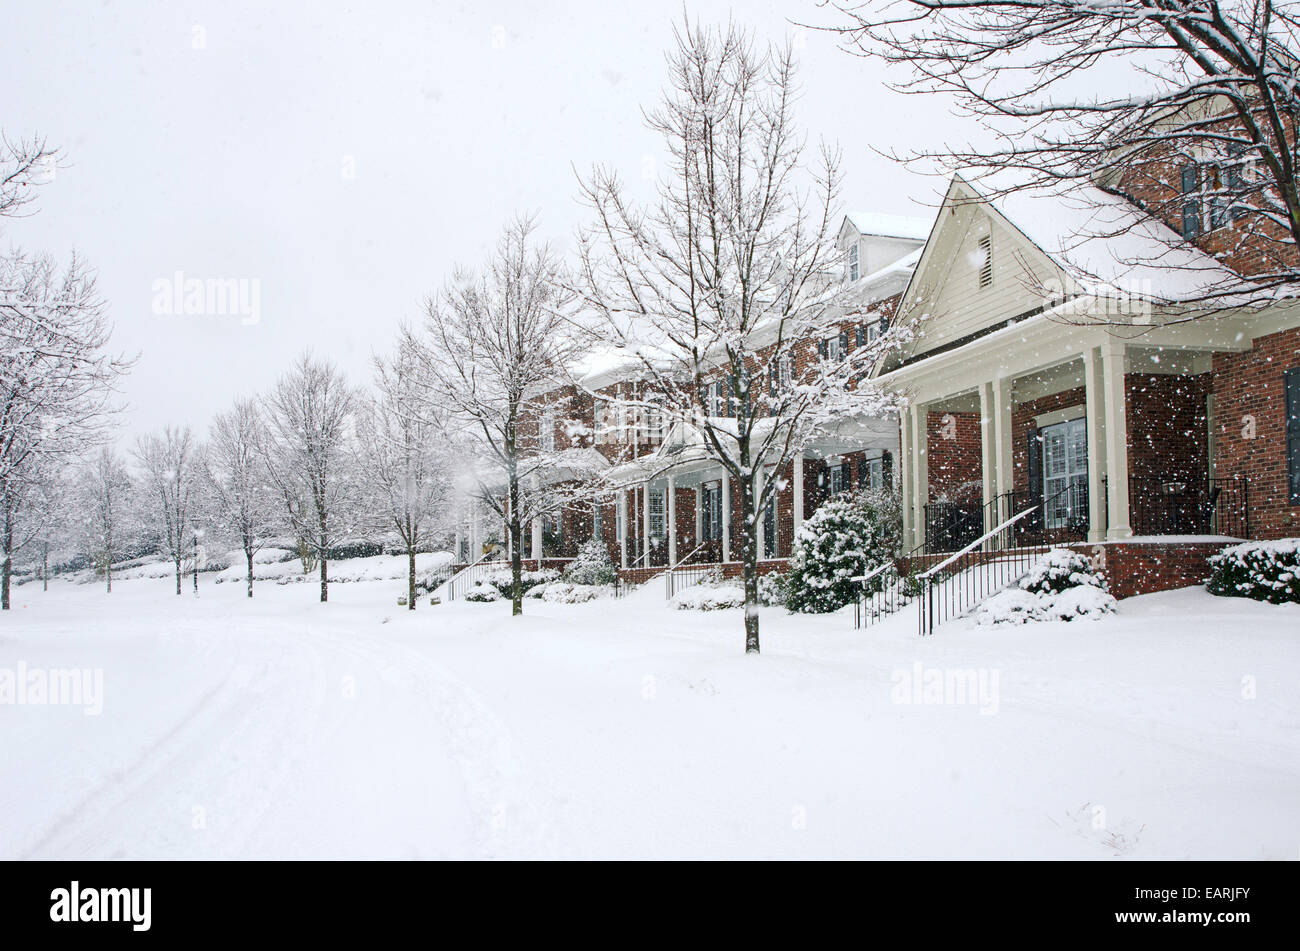 Tradicionales, casas de ladrillo son capturados durante una tormenta de nieve en esta hermosa escena de invierno. Foto de stock